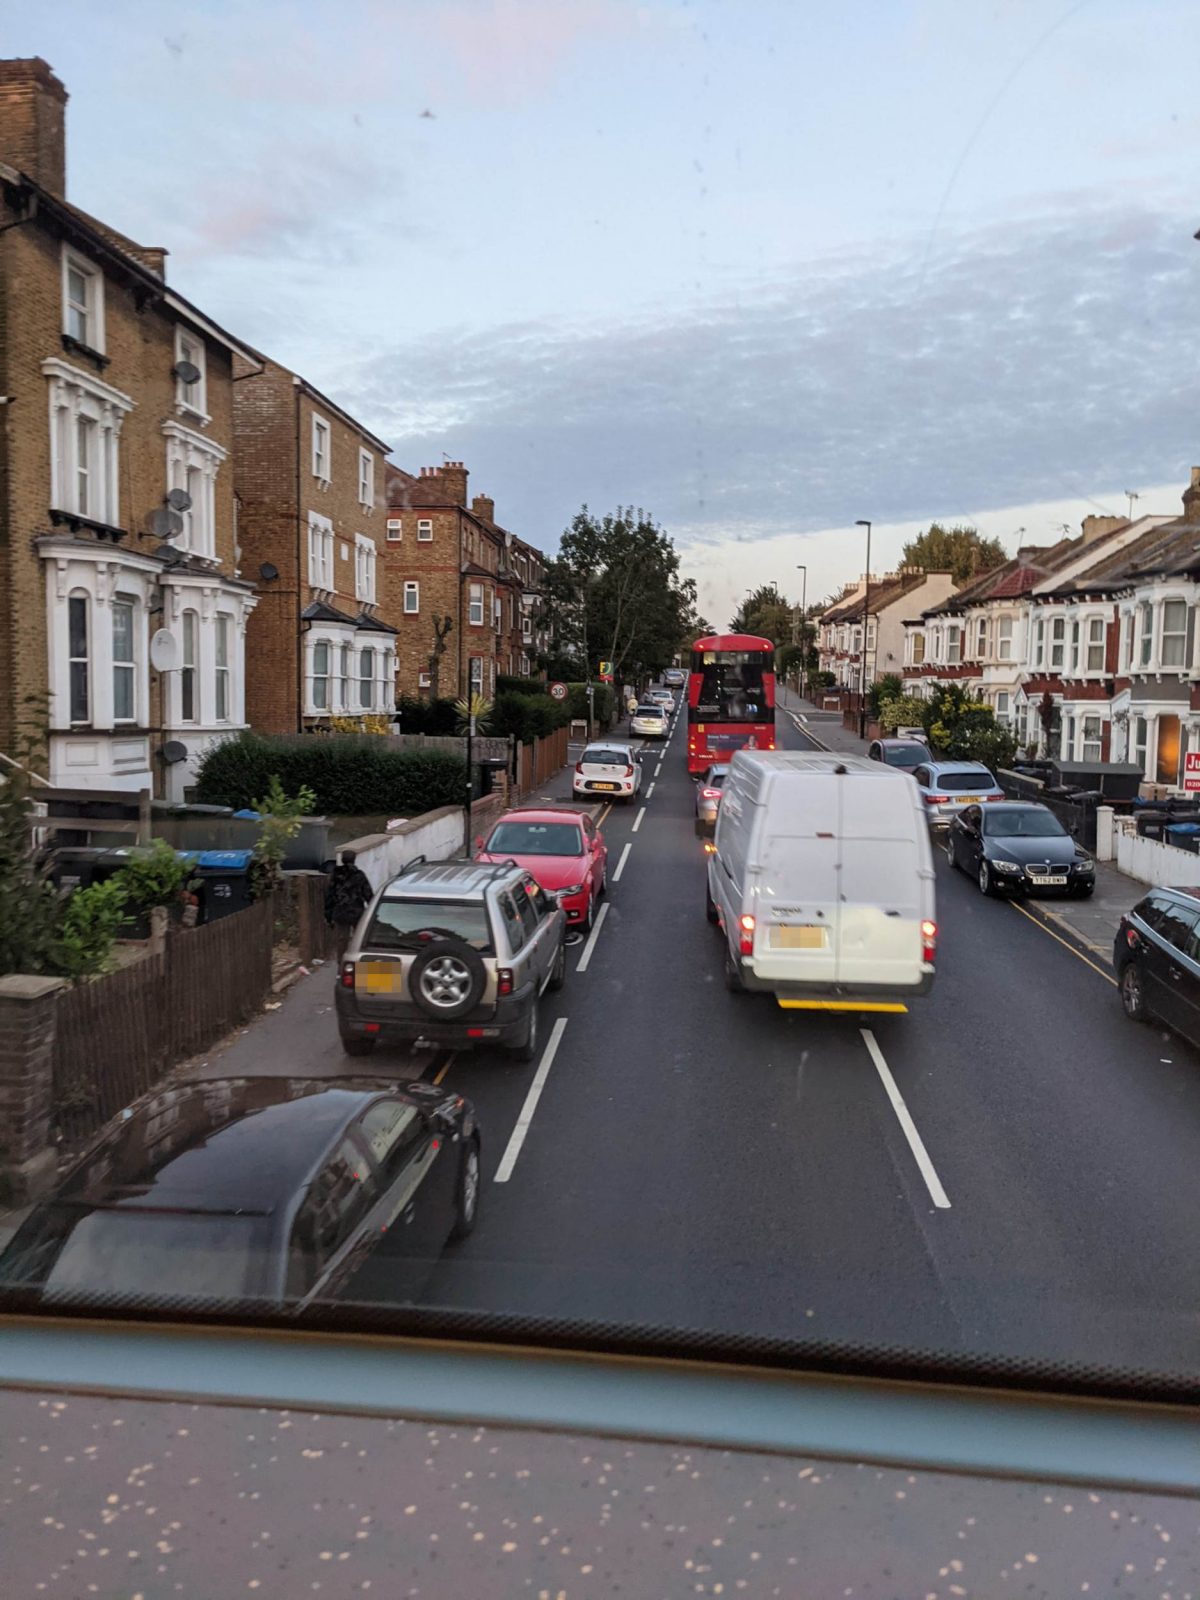 Bike lane in Croydon full of cars